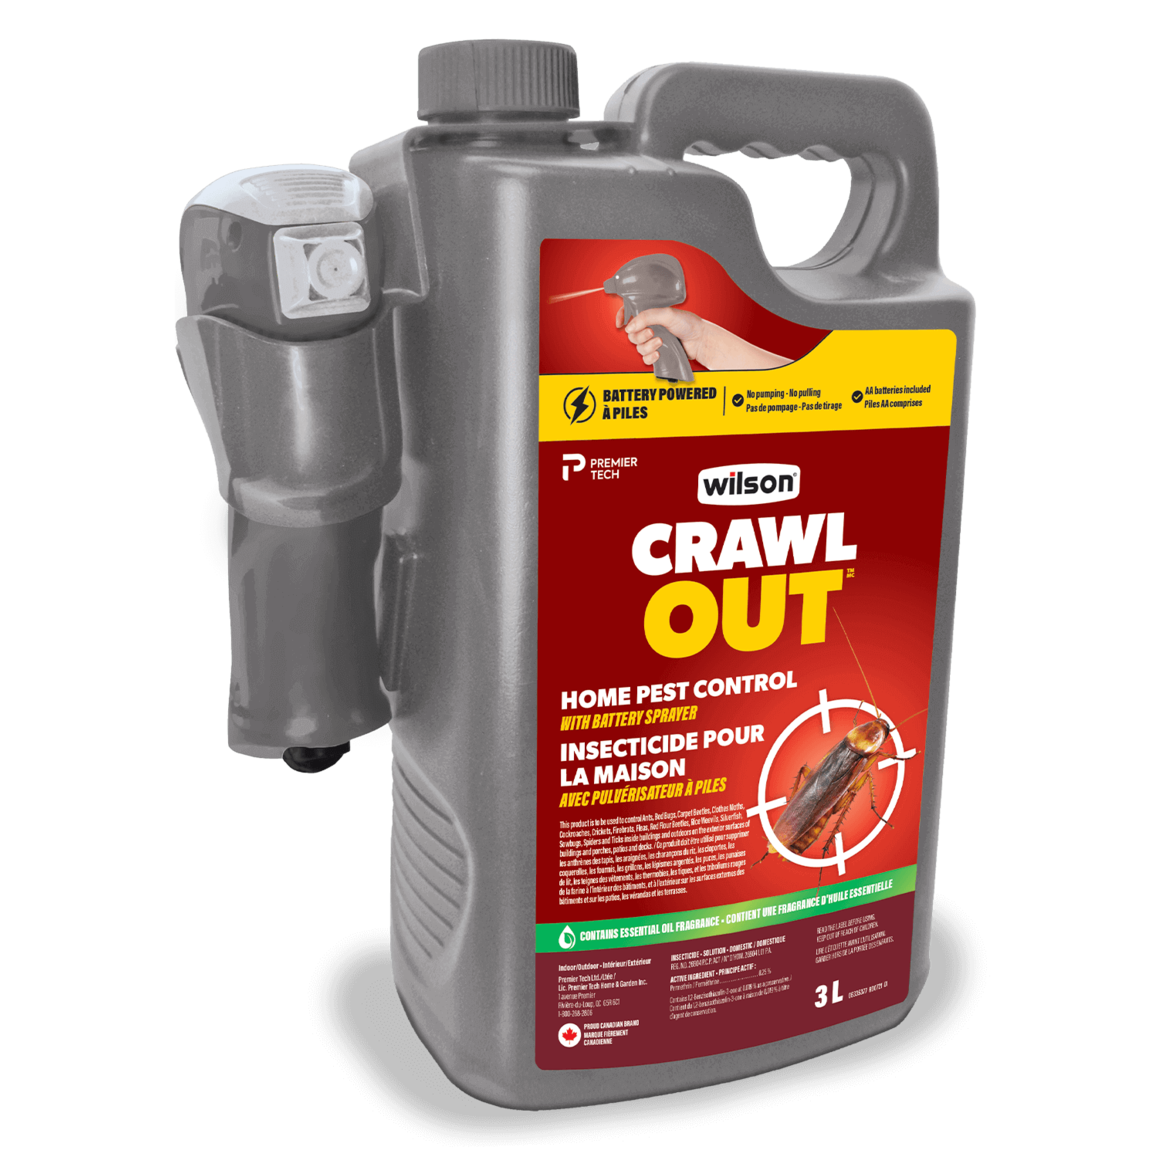 Insecticide pour la maison avec pulvérisateur à piles CRAWL OUT de Wilson